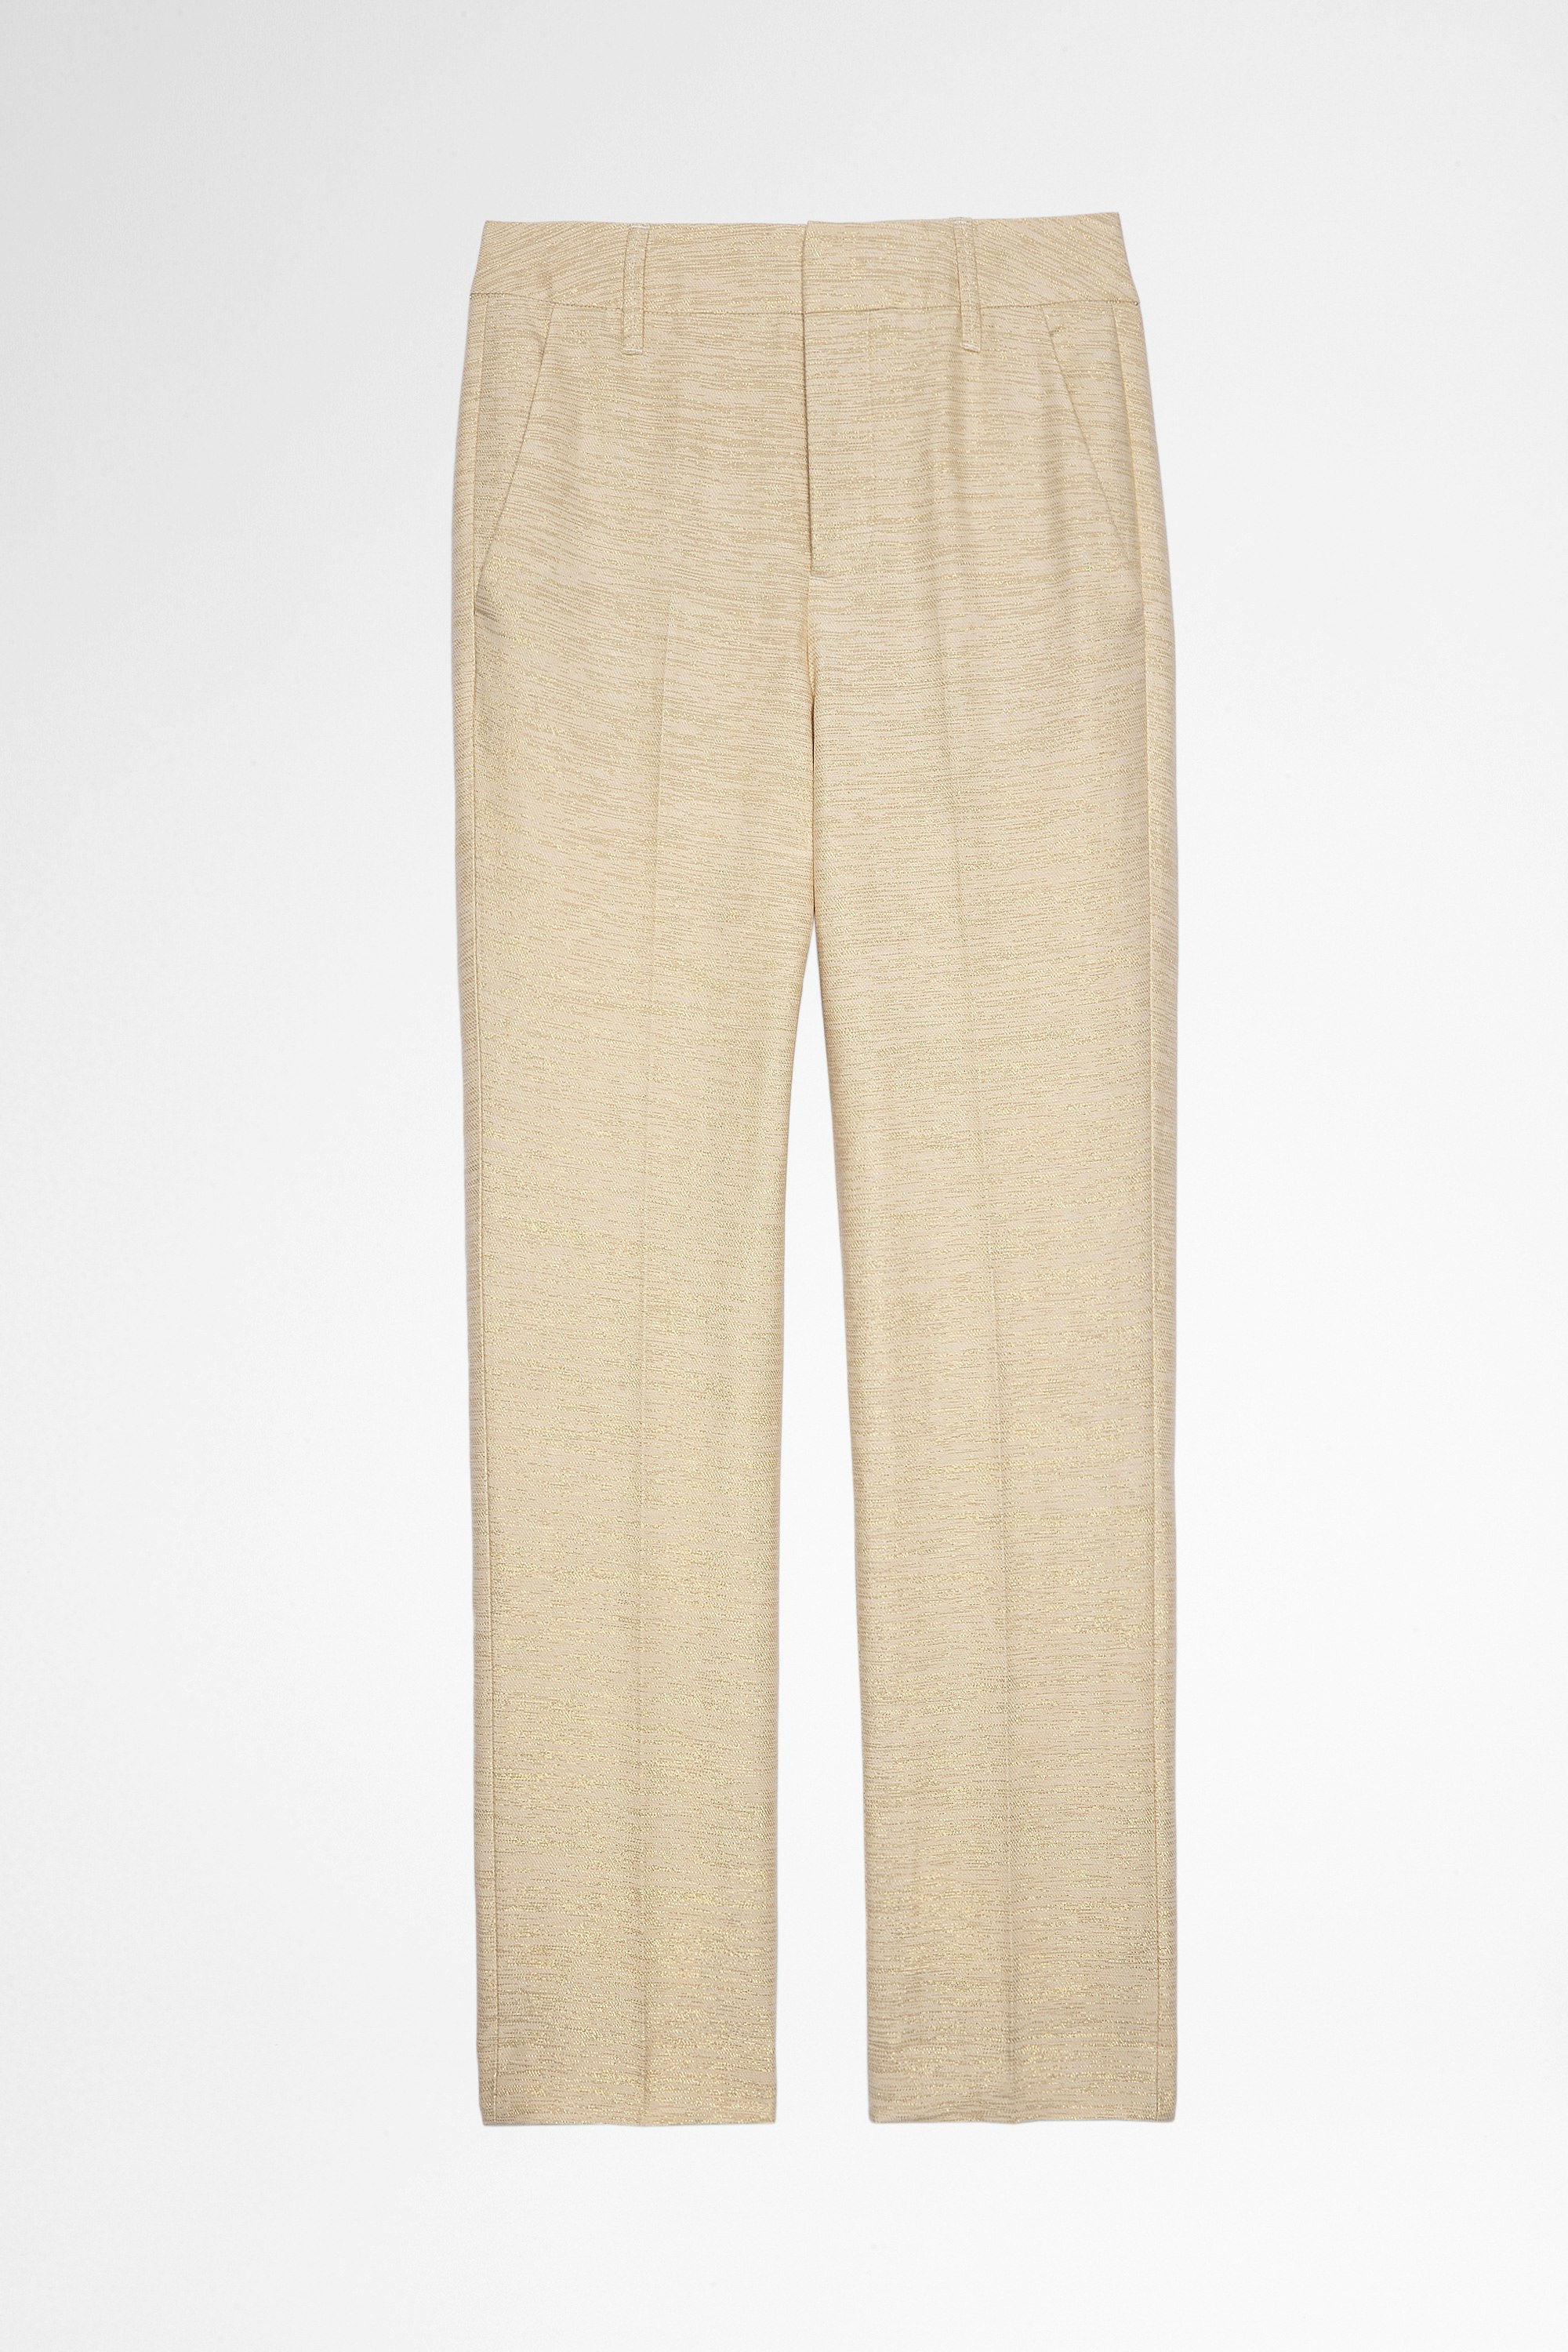 Pantaloni Posh Lino Pantaloni in lino beige con fili metallici dorati donna